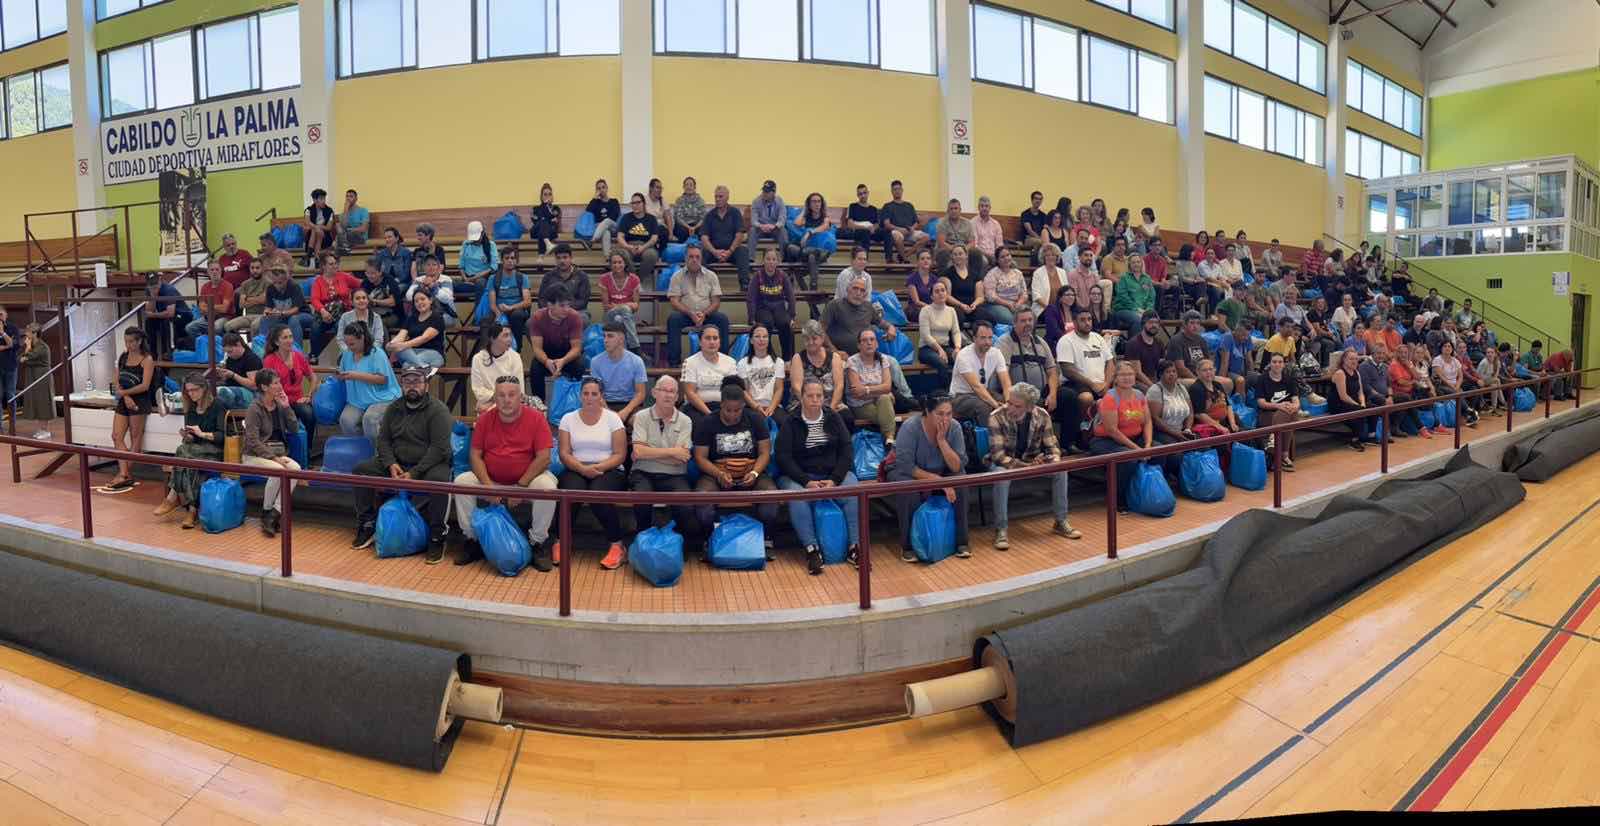 El Cabildo contrata a 140 personas a través del Plan Integral de Empleo para La Palma